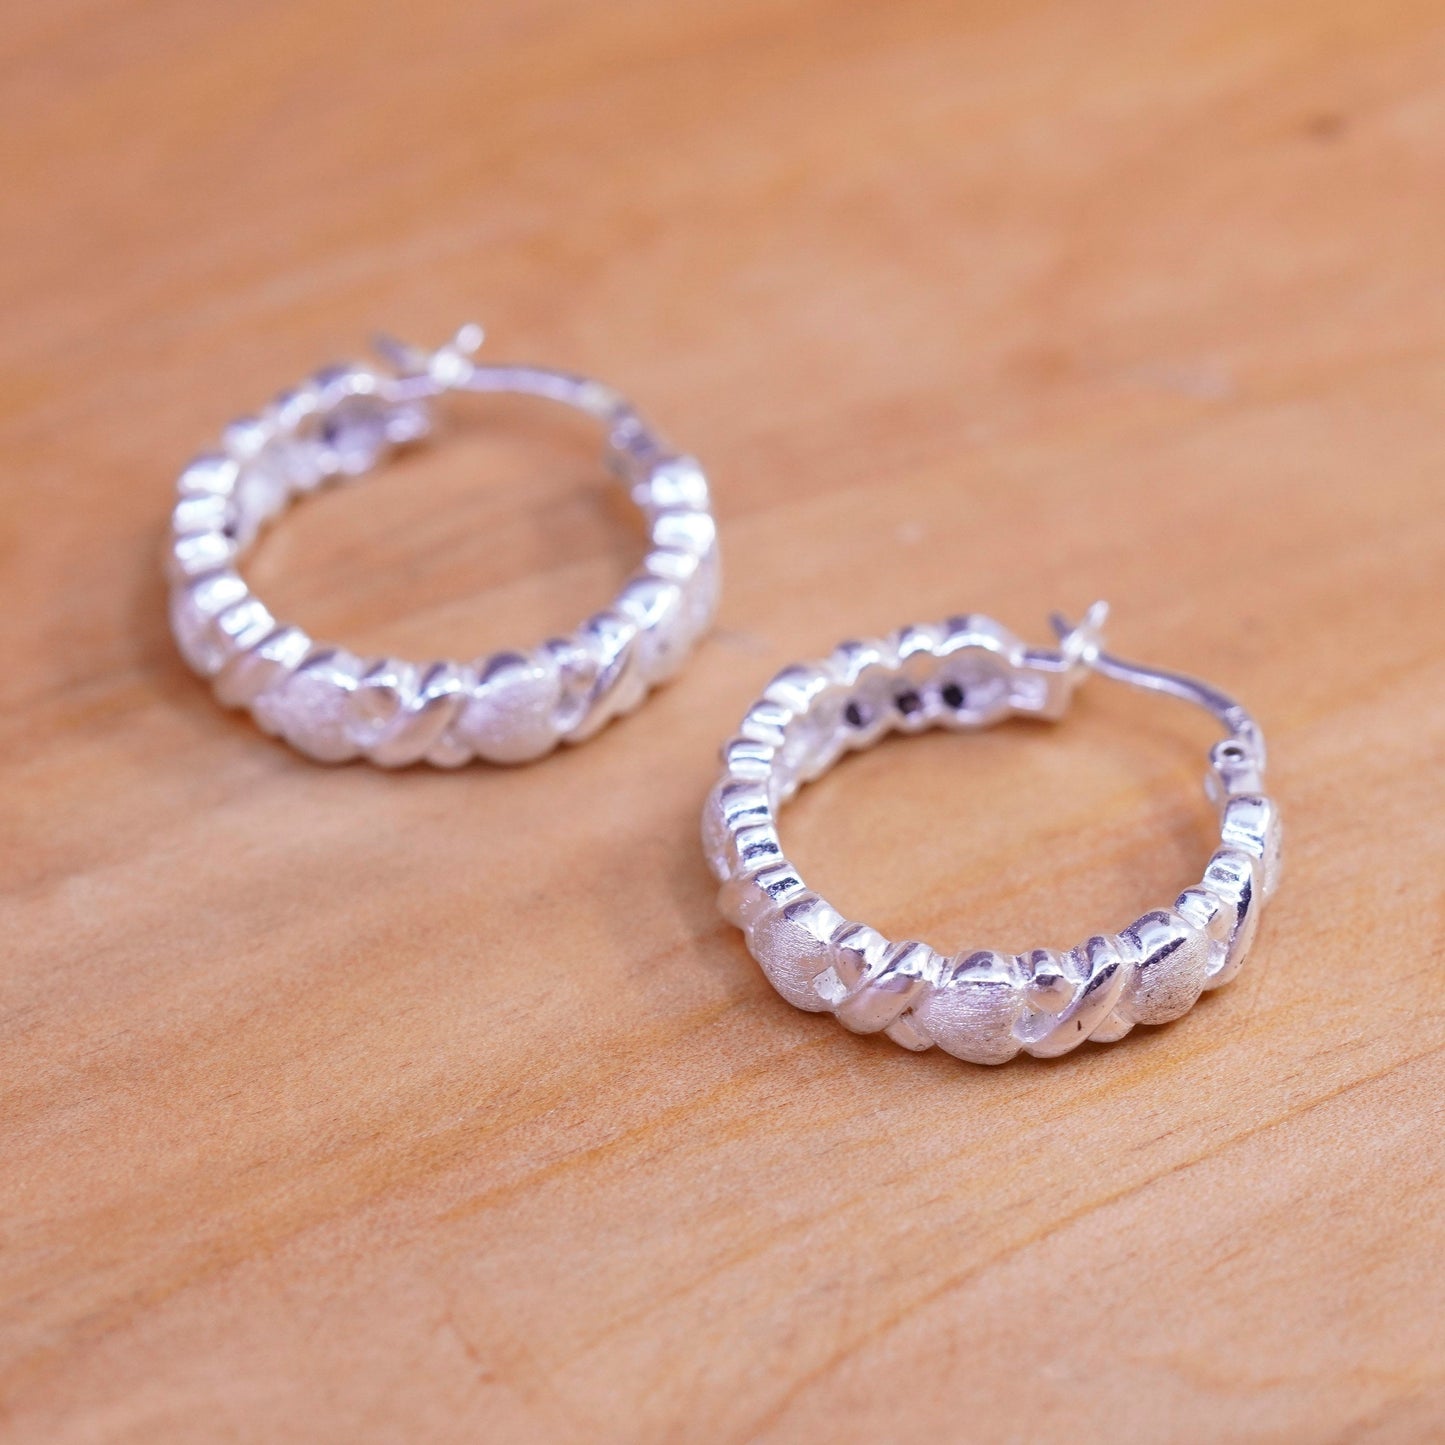 0.75”, Vintage Sterling silver handmade earrings, 925 heart textured hoops